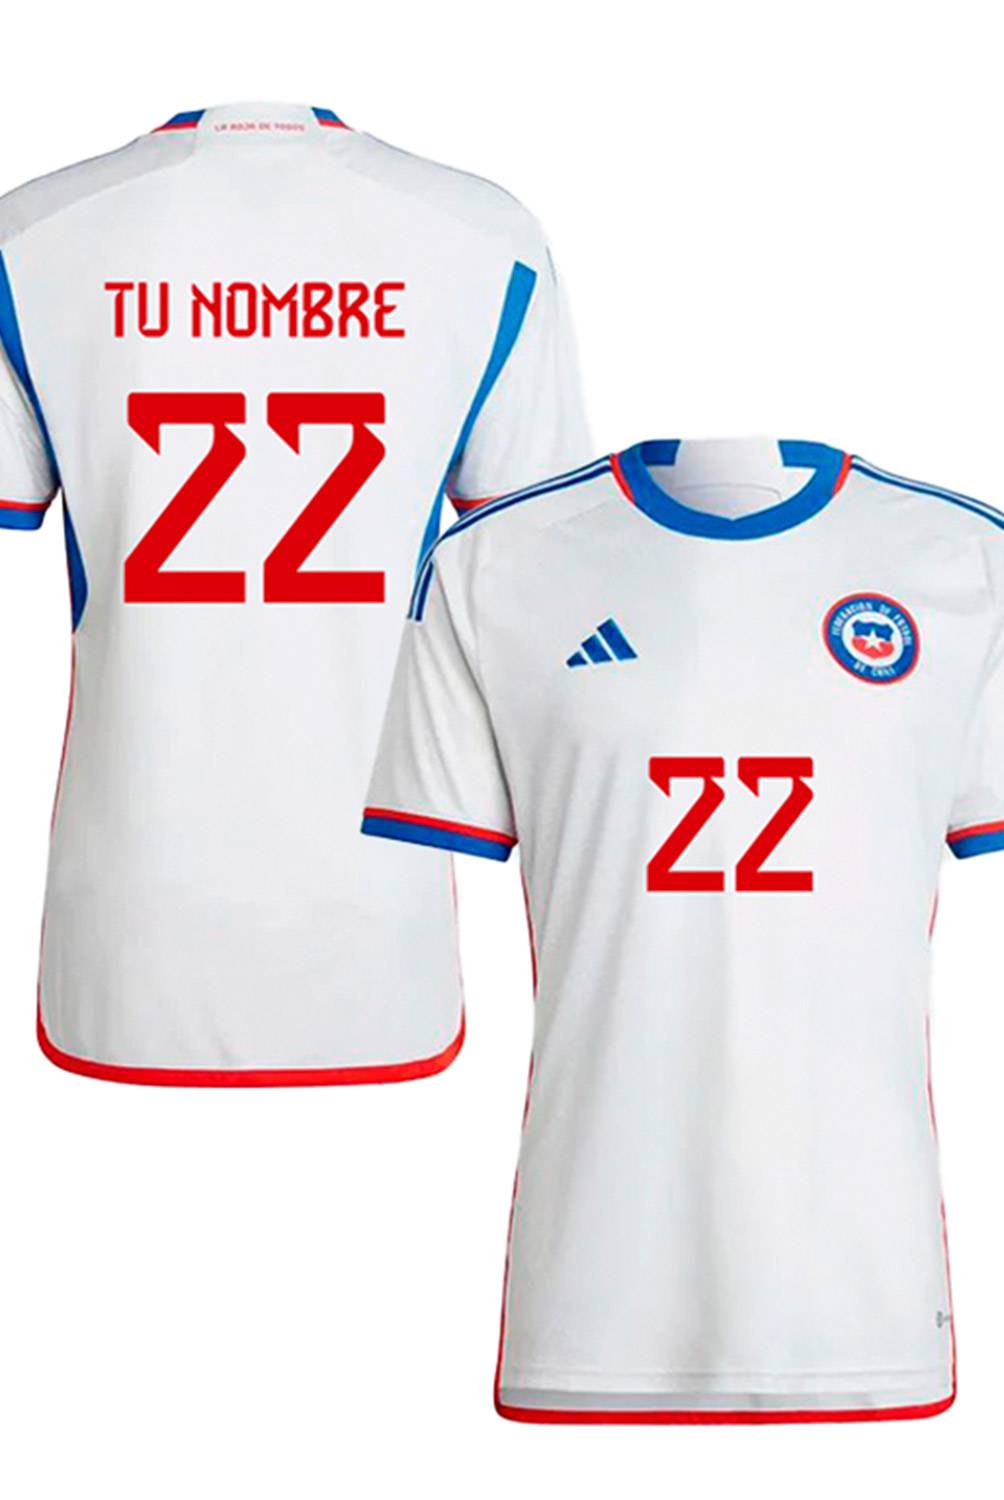 ADIDAS - Camiseta De Fútbol Niño Personificable Seleccion Chilena Visita Adidas